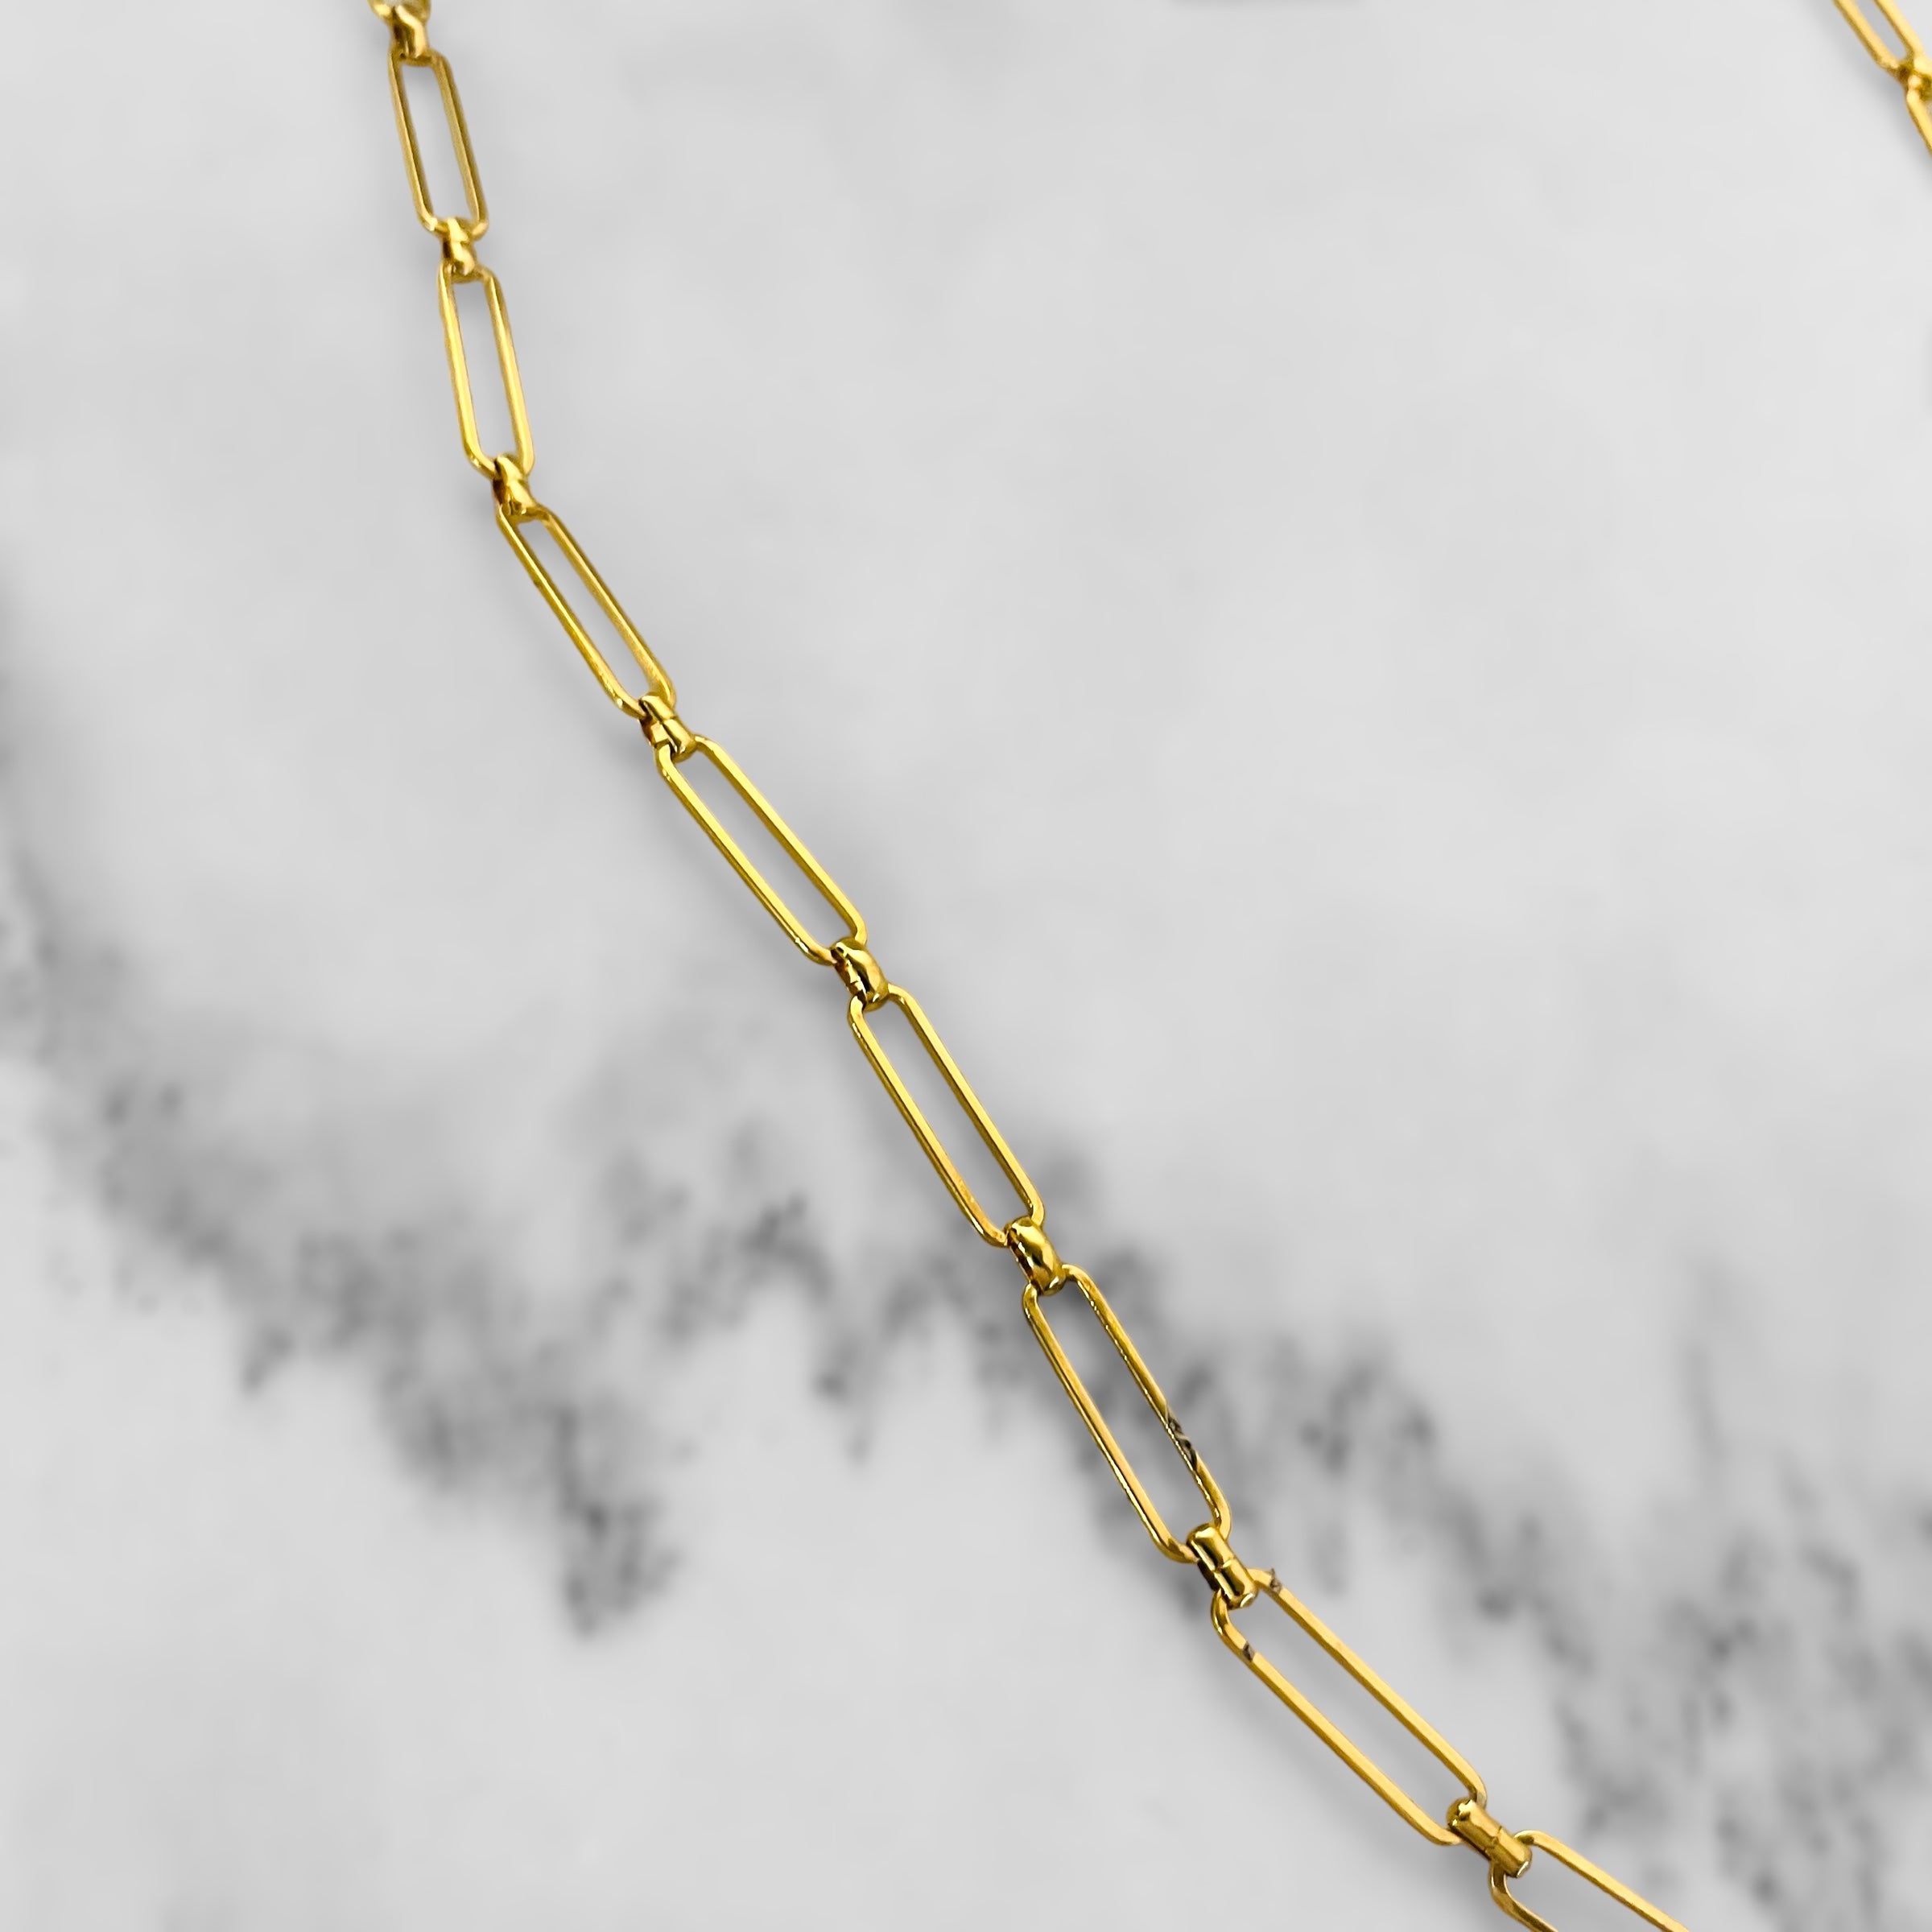 Long Gold Bonnie Necklace